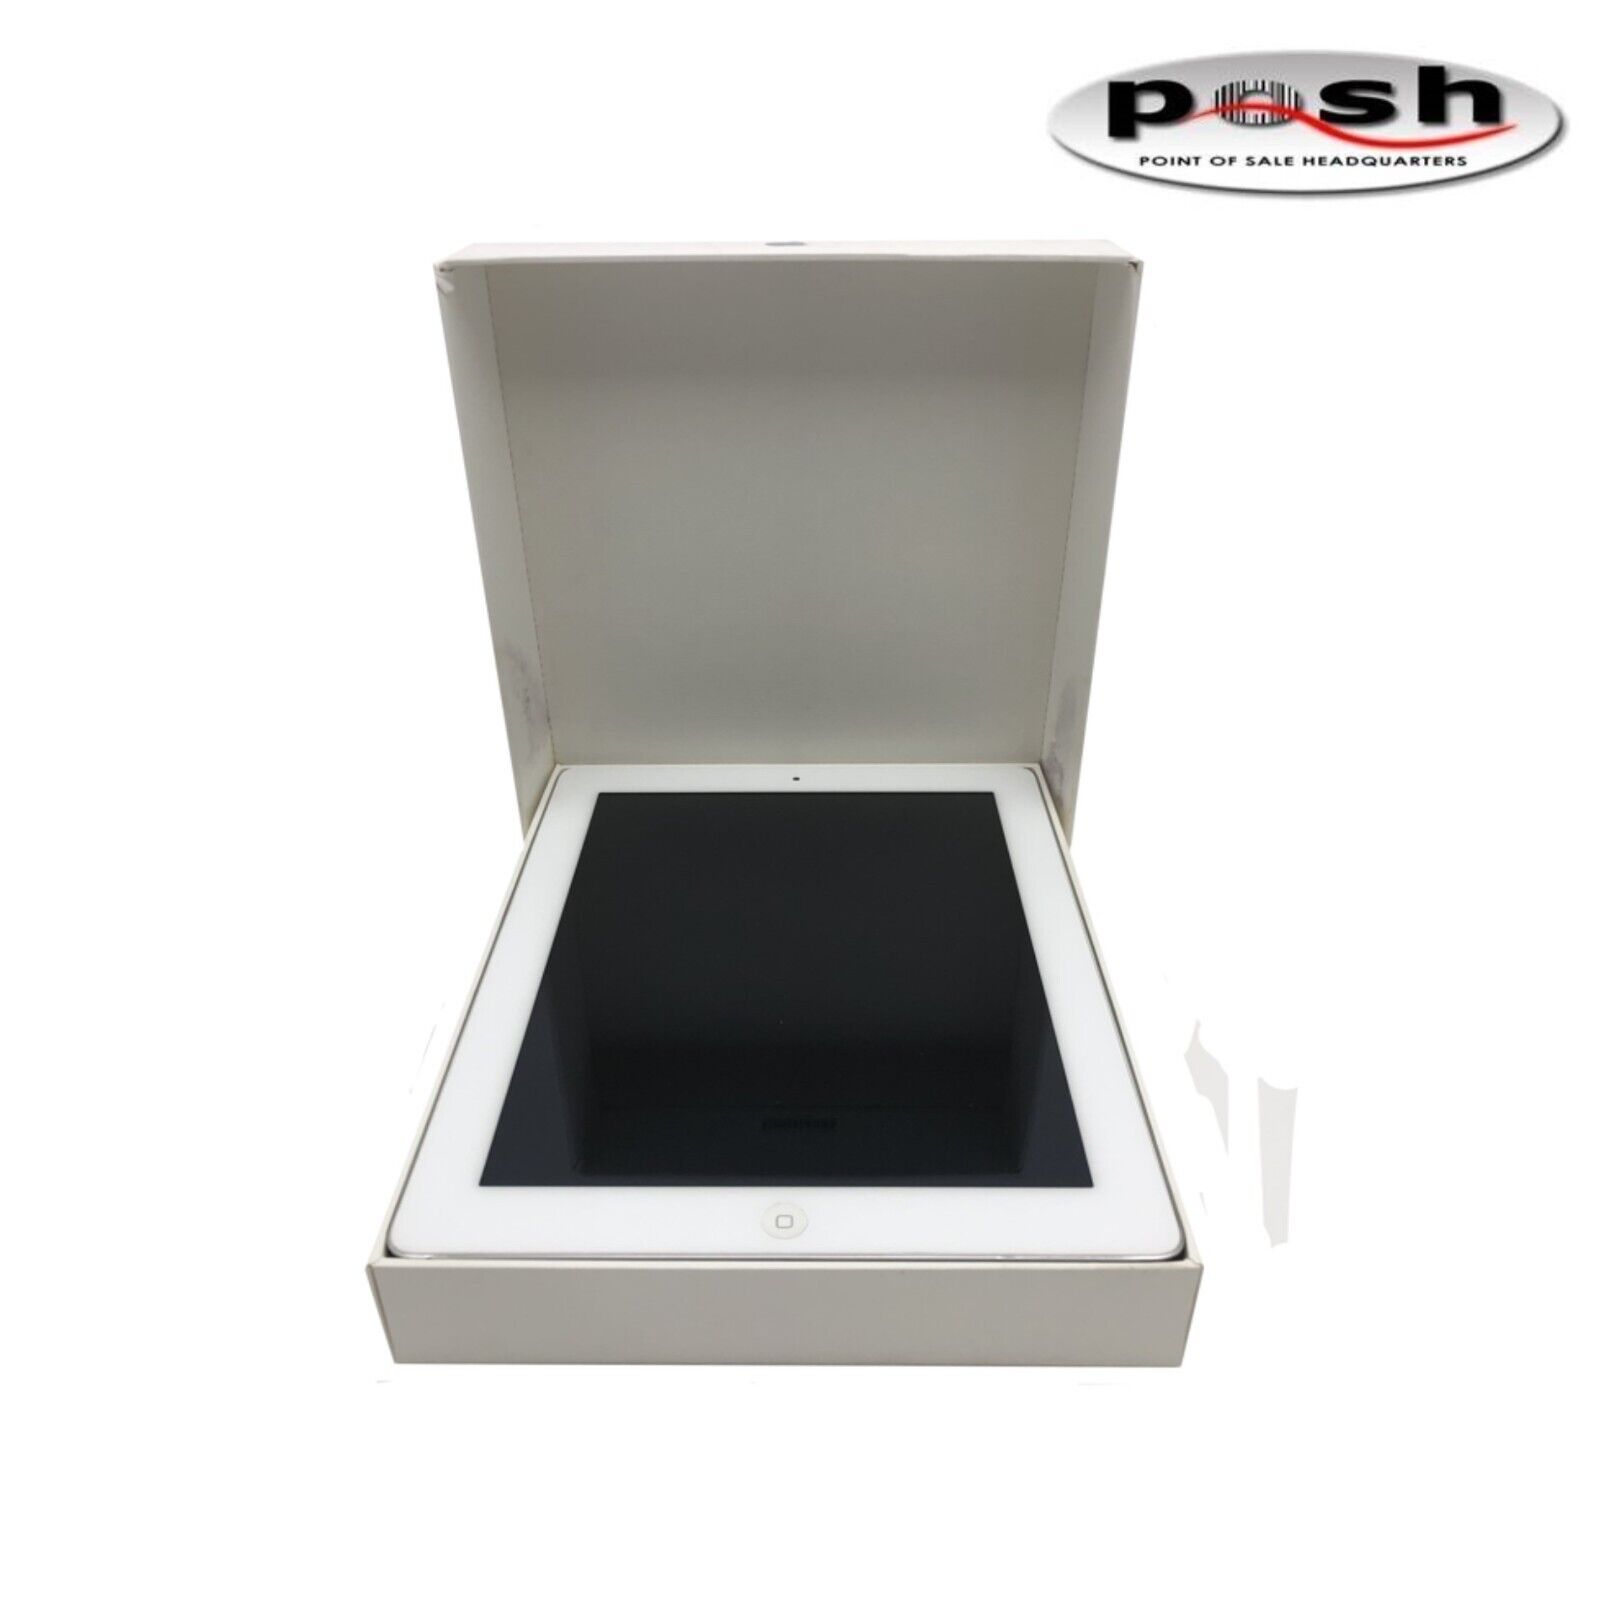 Apple iPad 2 A1395 12.9GB, Wi-Fi, 9.7in - Silver/White